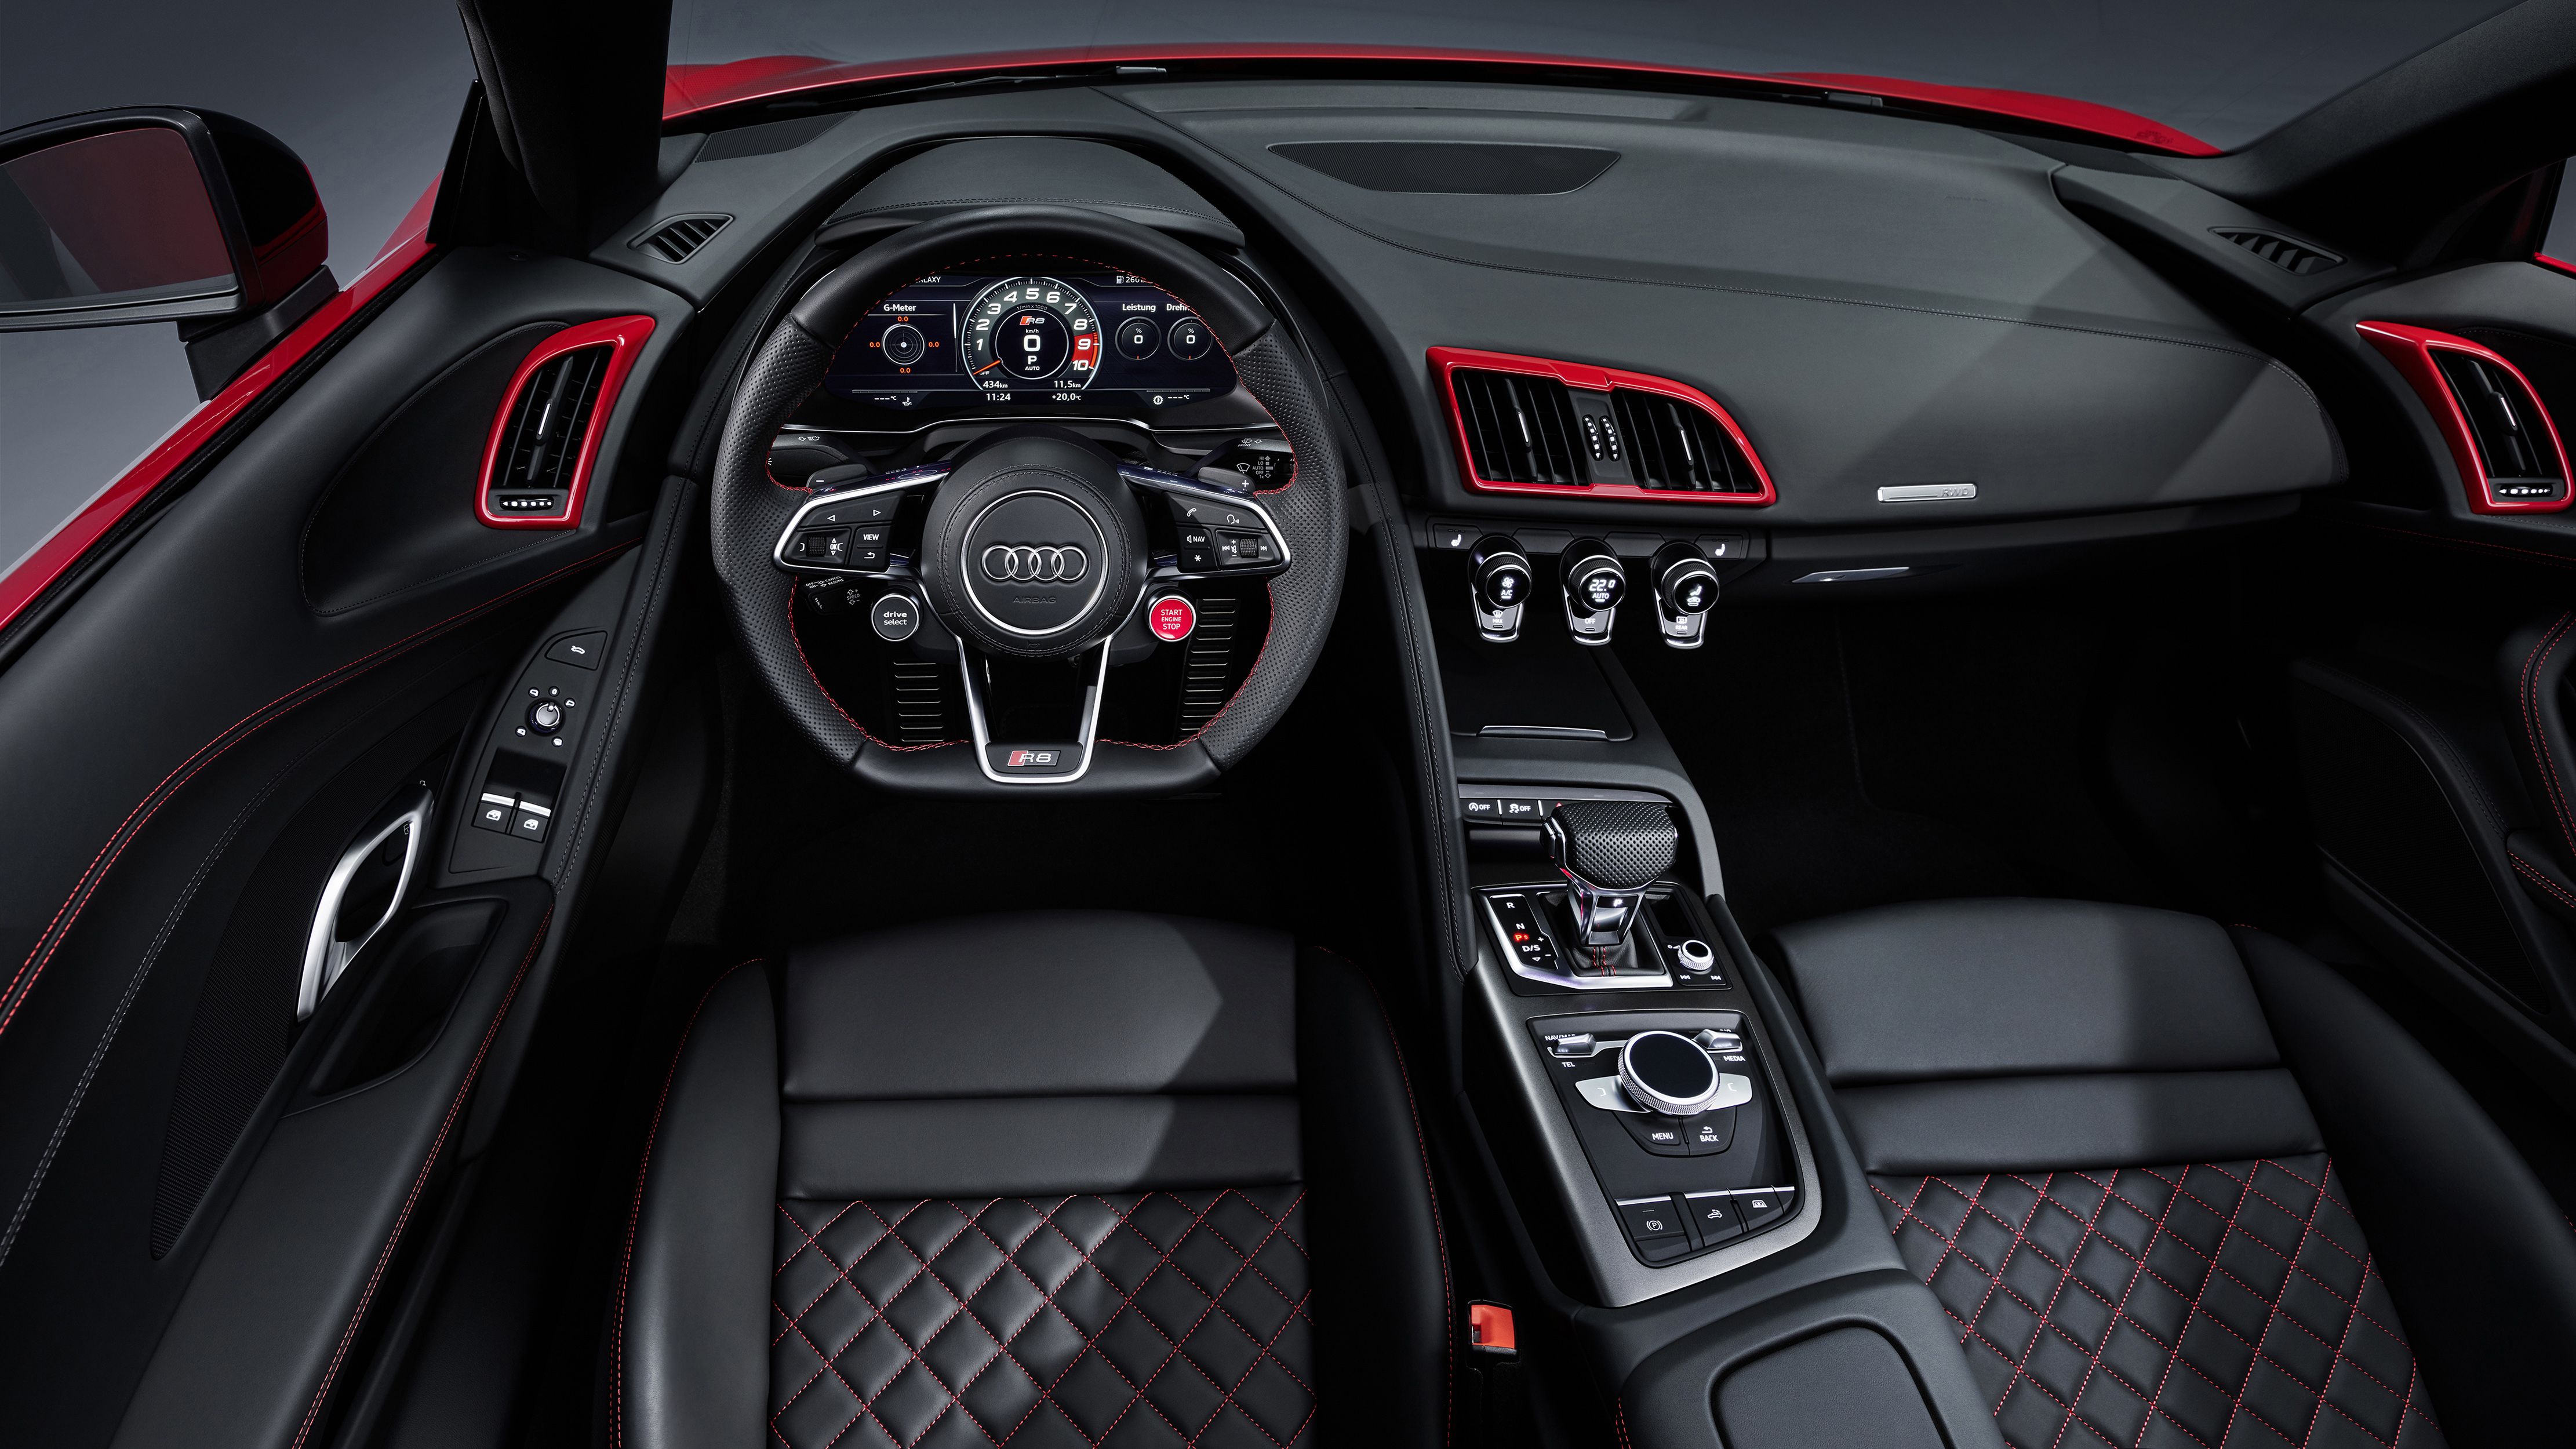 Audi R8 V10 RWD Spyder 2019 4K Interior Wallpaper. HD Car Wallpaper